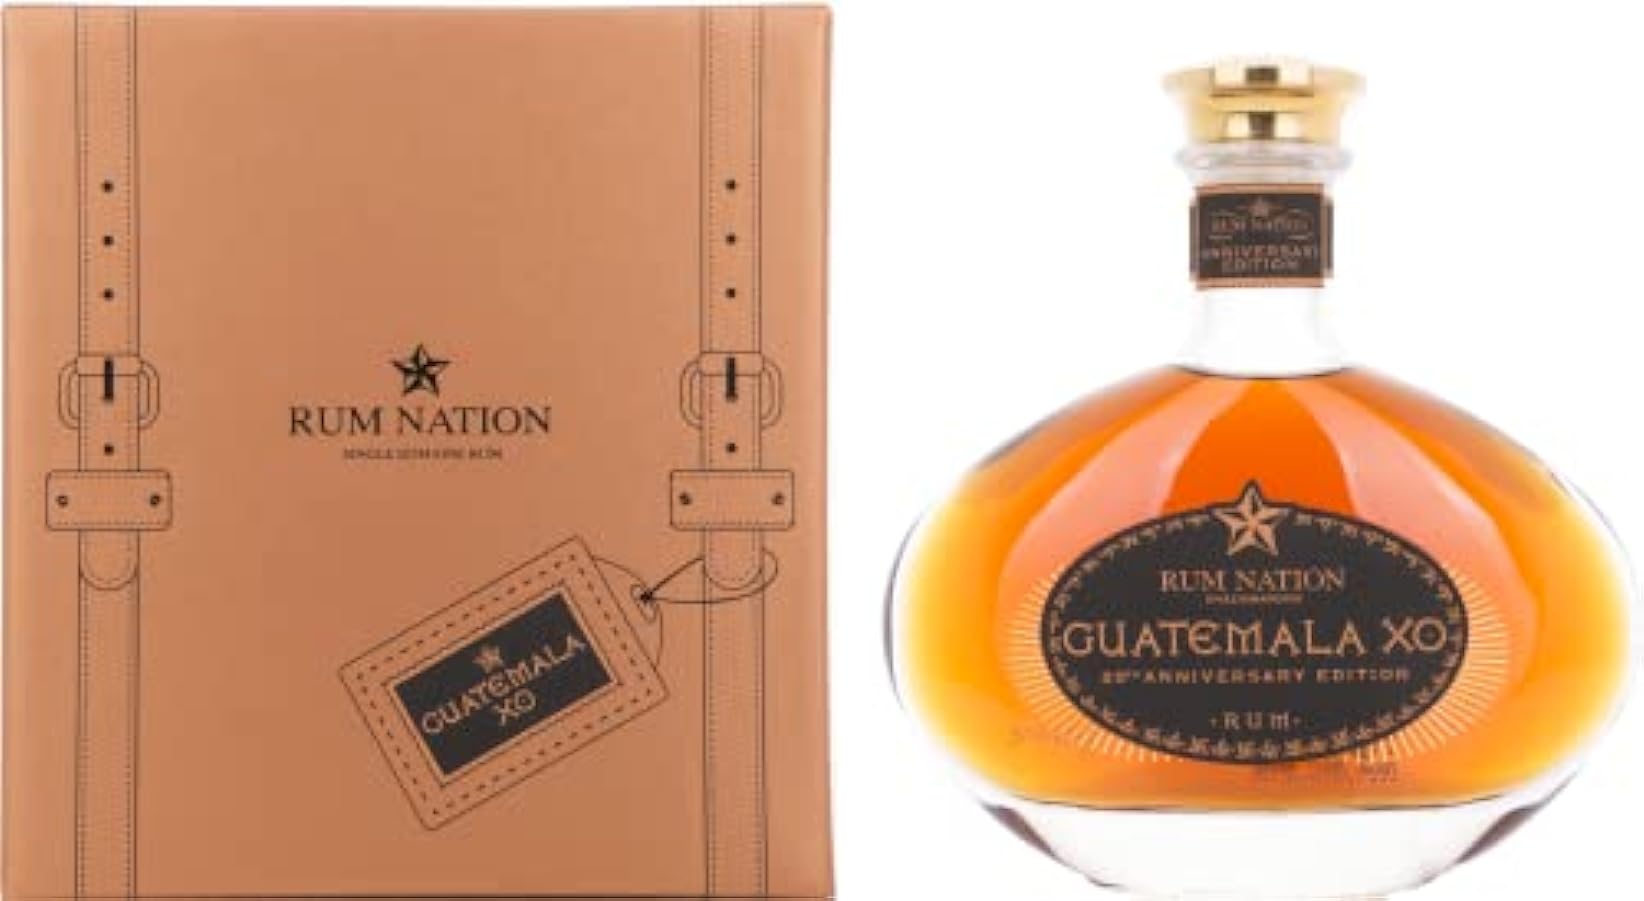 Rum Nation Guatemala XO 20th Anniversary Edition 40% Vol. 0,7l in Giftbox 232562465